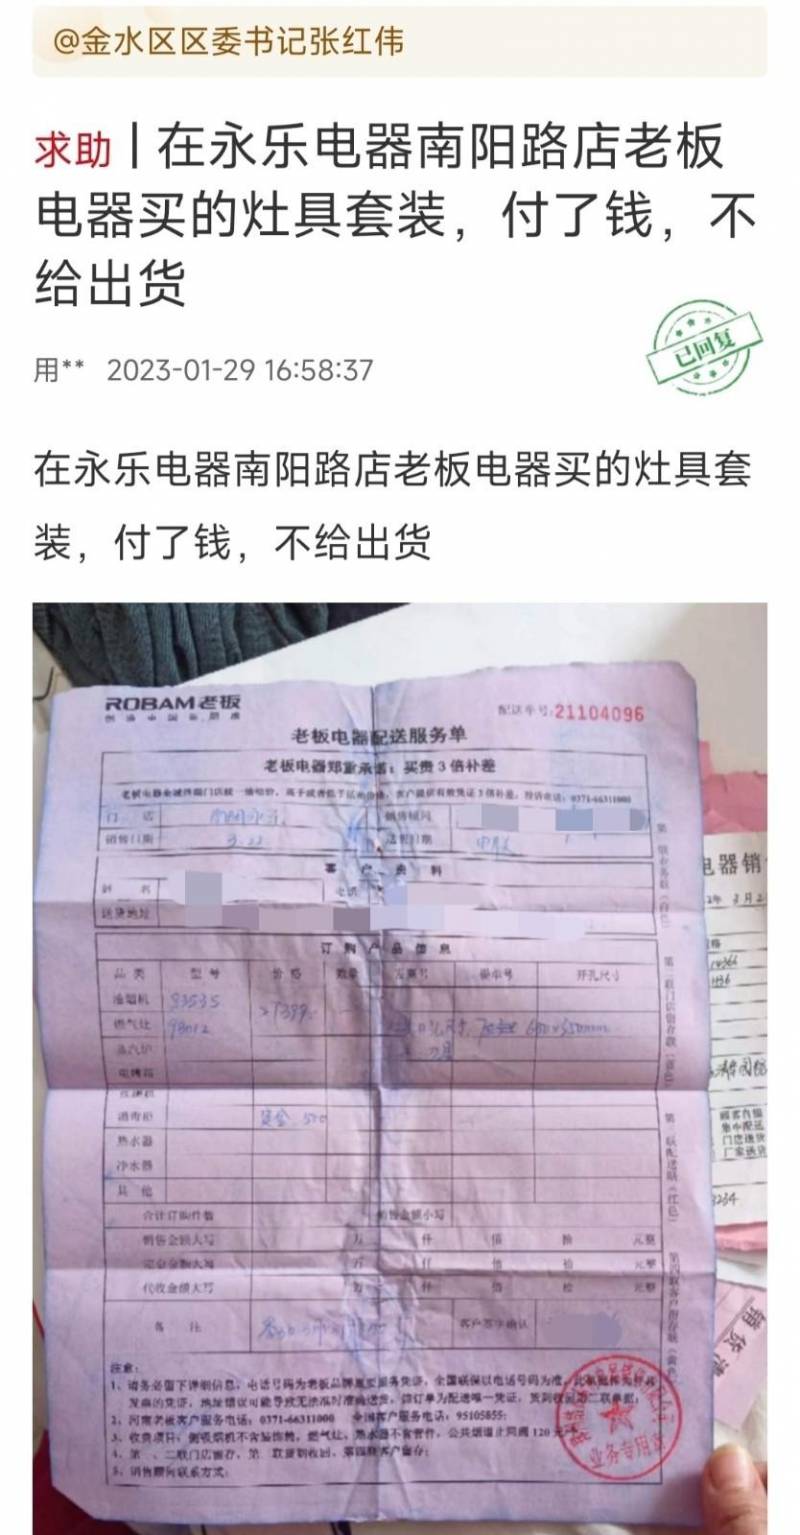 上海永乐家电拖延送货，消费者权益受损